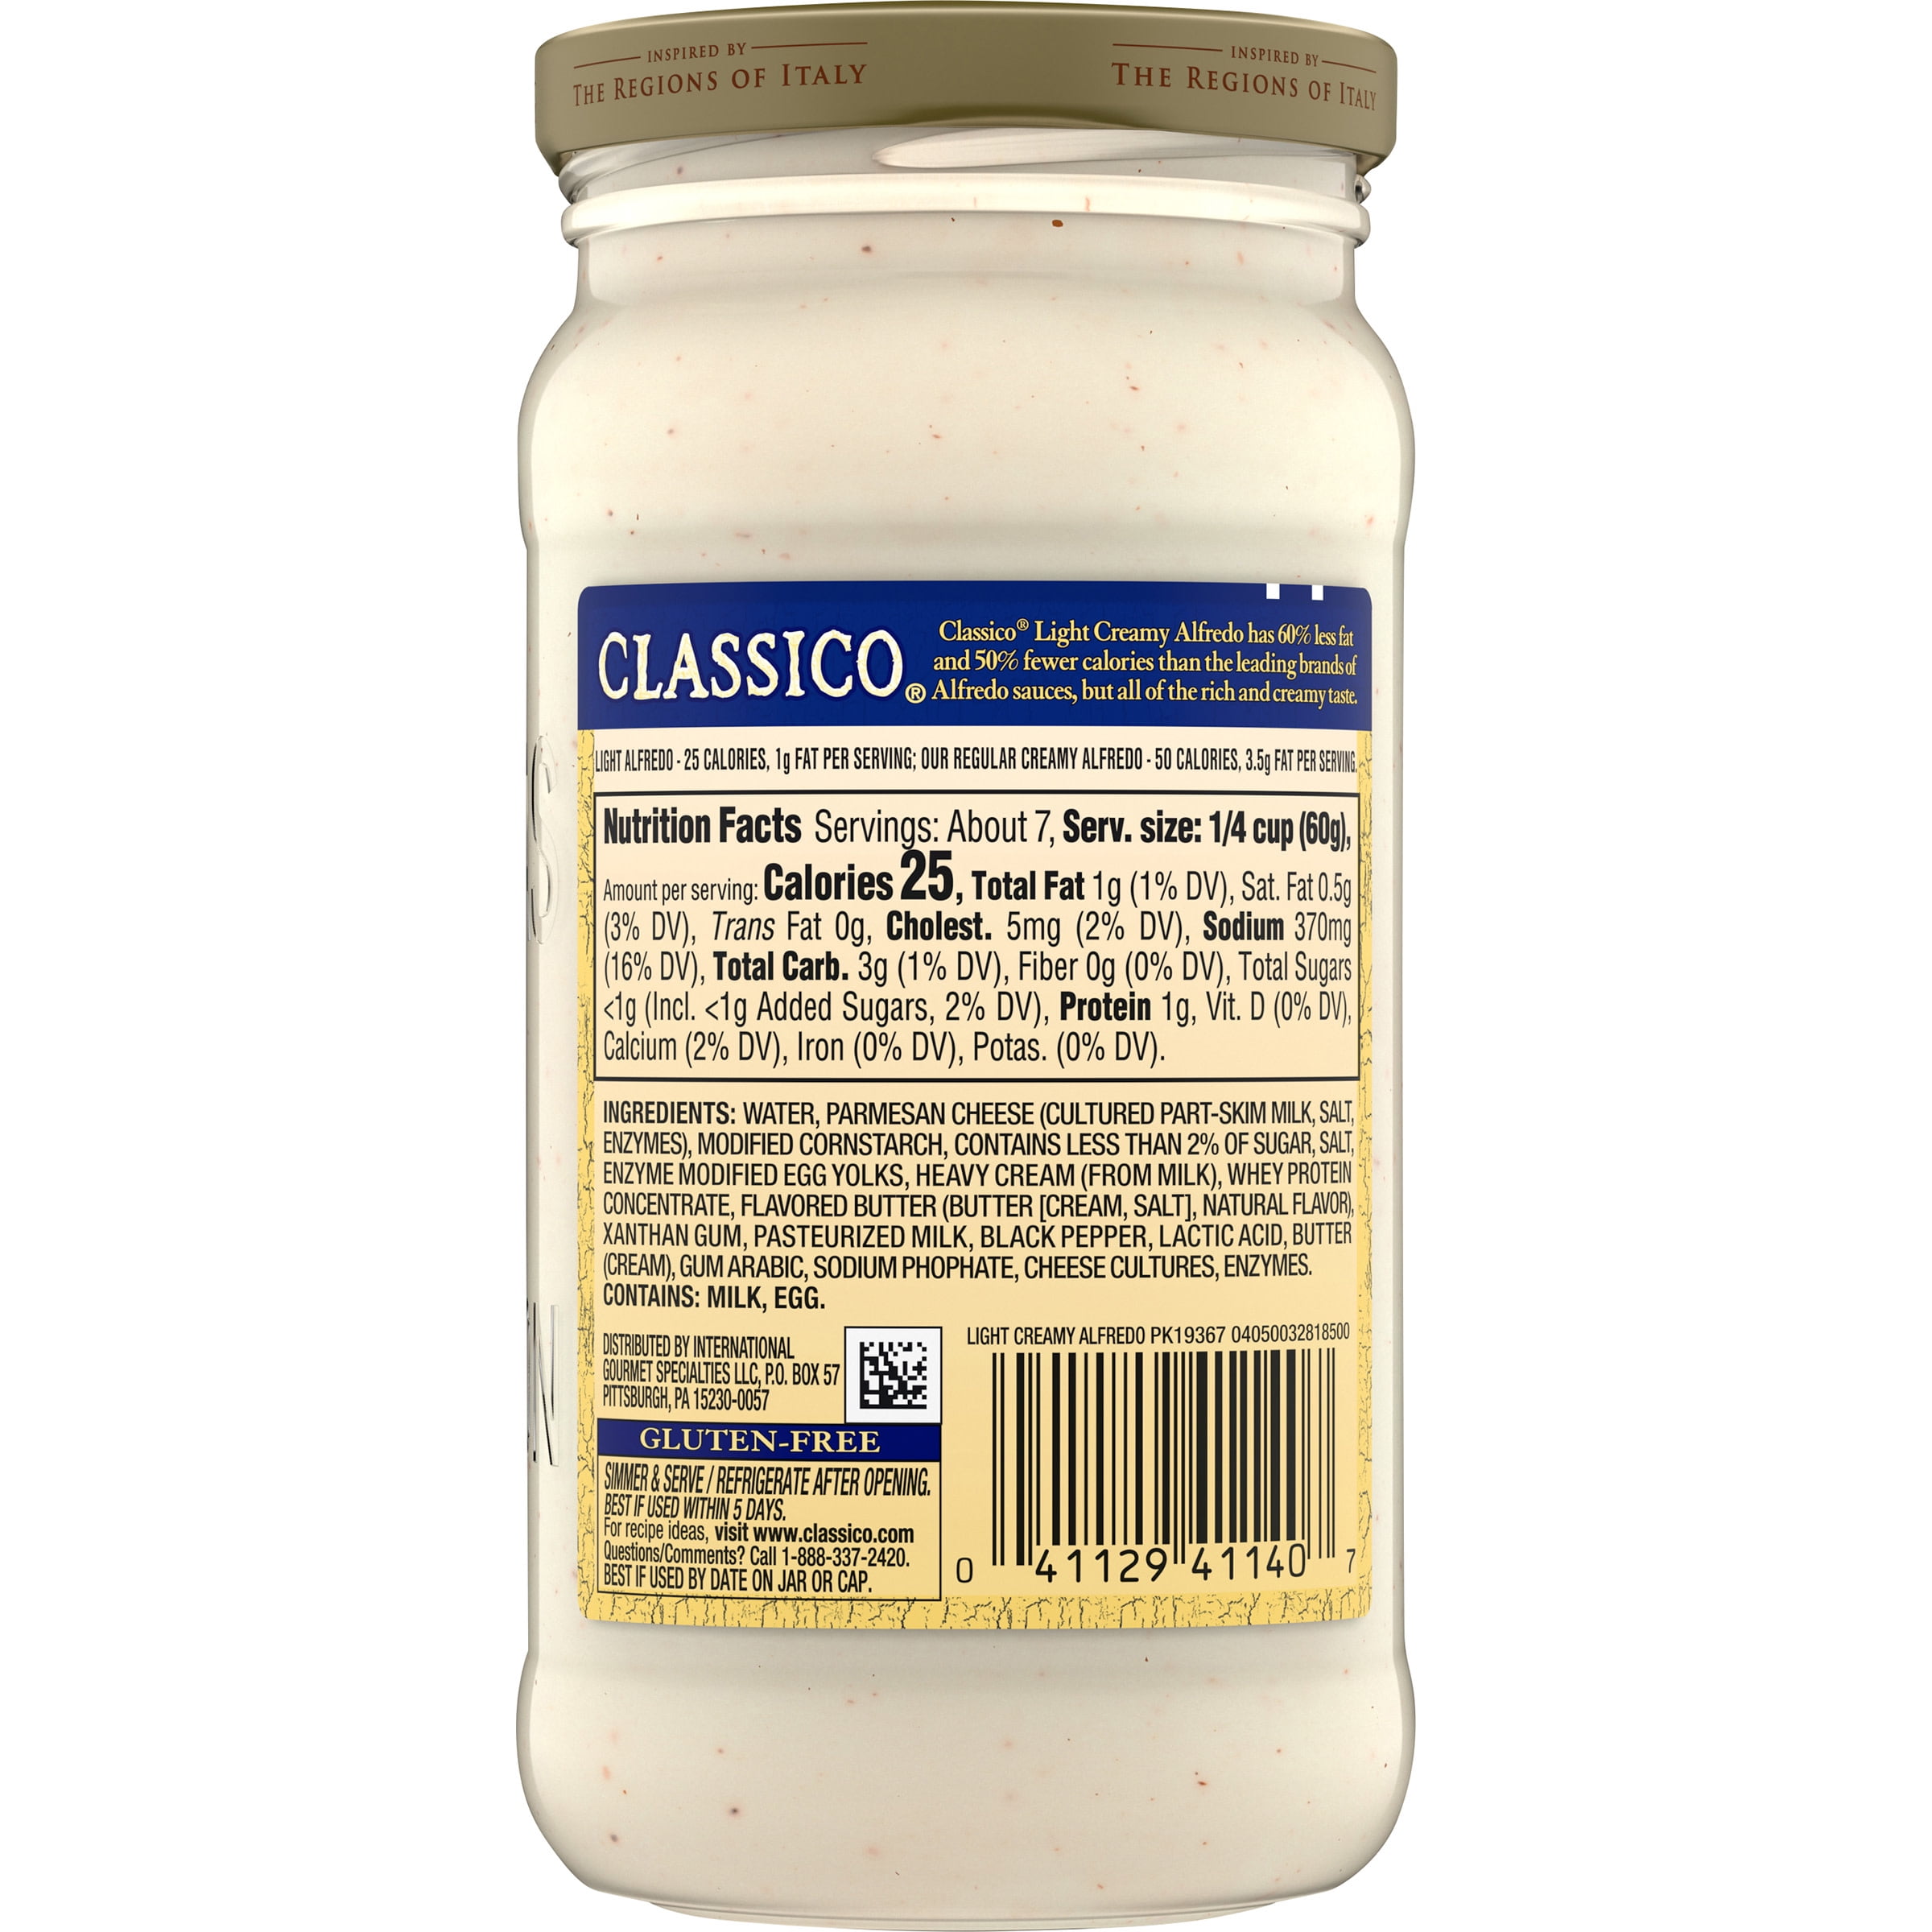 Classico Light Creamy Alfredo Pasta